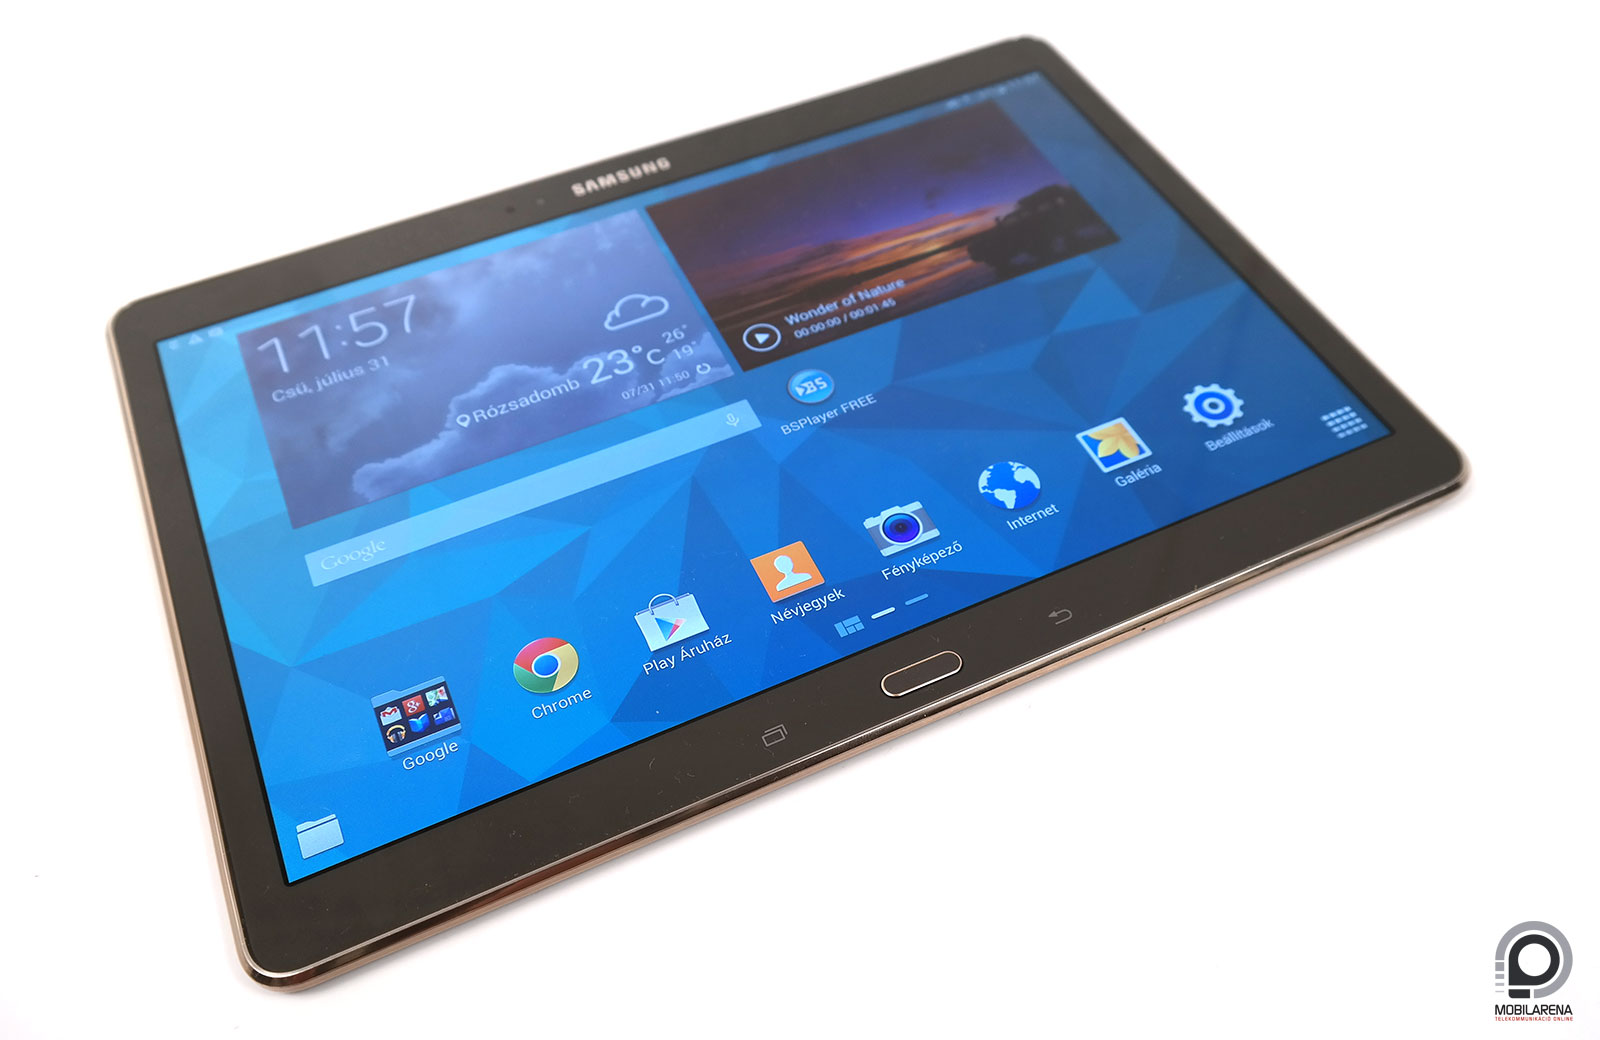 Samsung Galaxy Tab S 10.5 - magas képesítés - Mobilarena Tablet teszt -  Nyomtatóbarát verzió